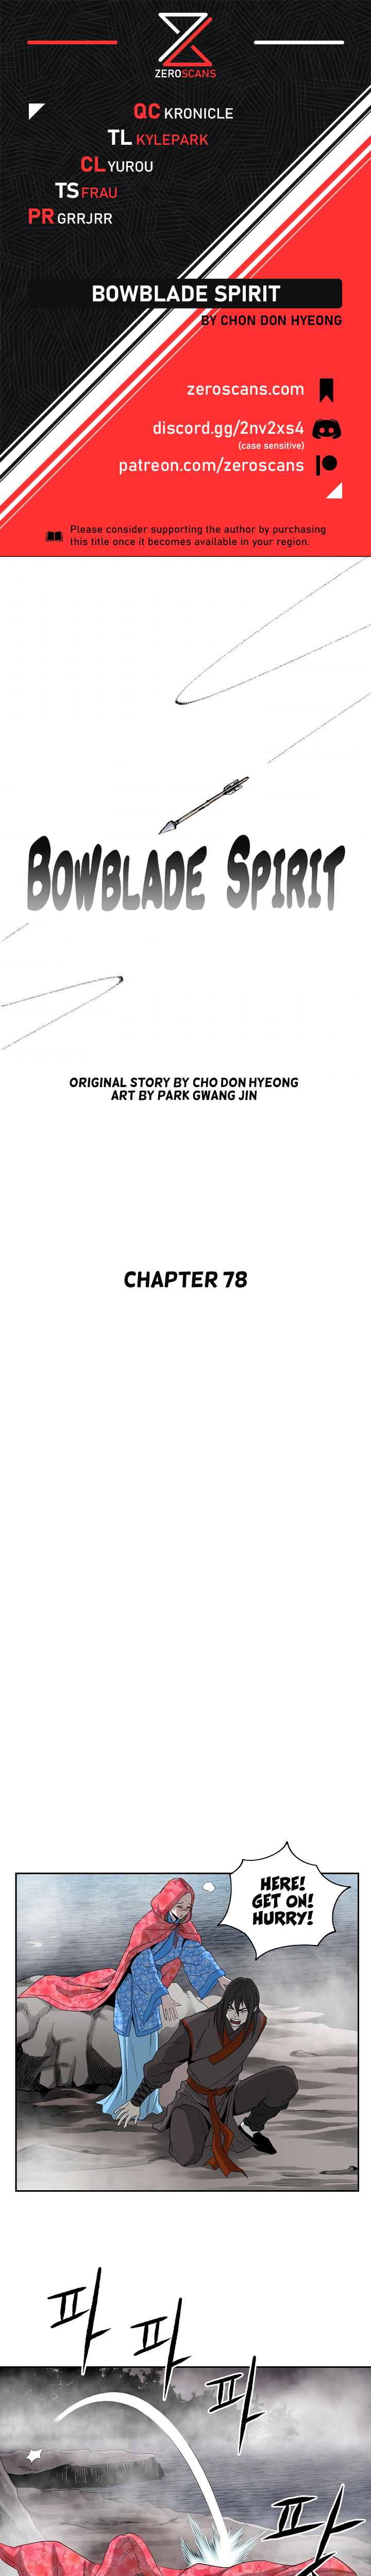 Bowblade Spirit - Chapter 7292 - Image 1